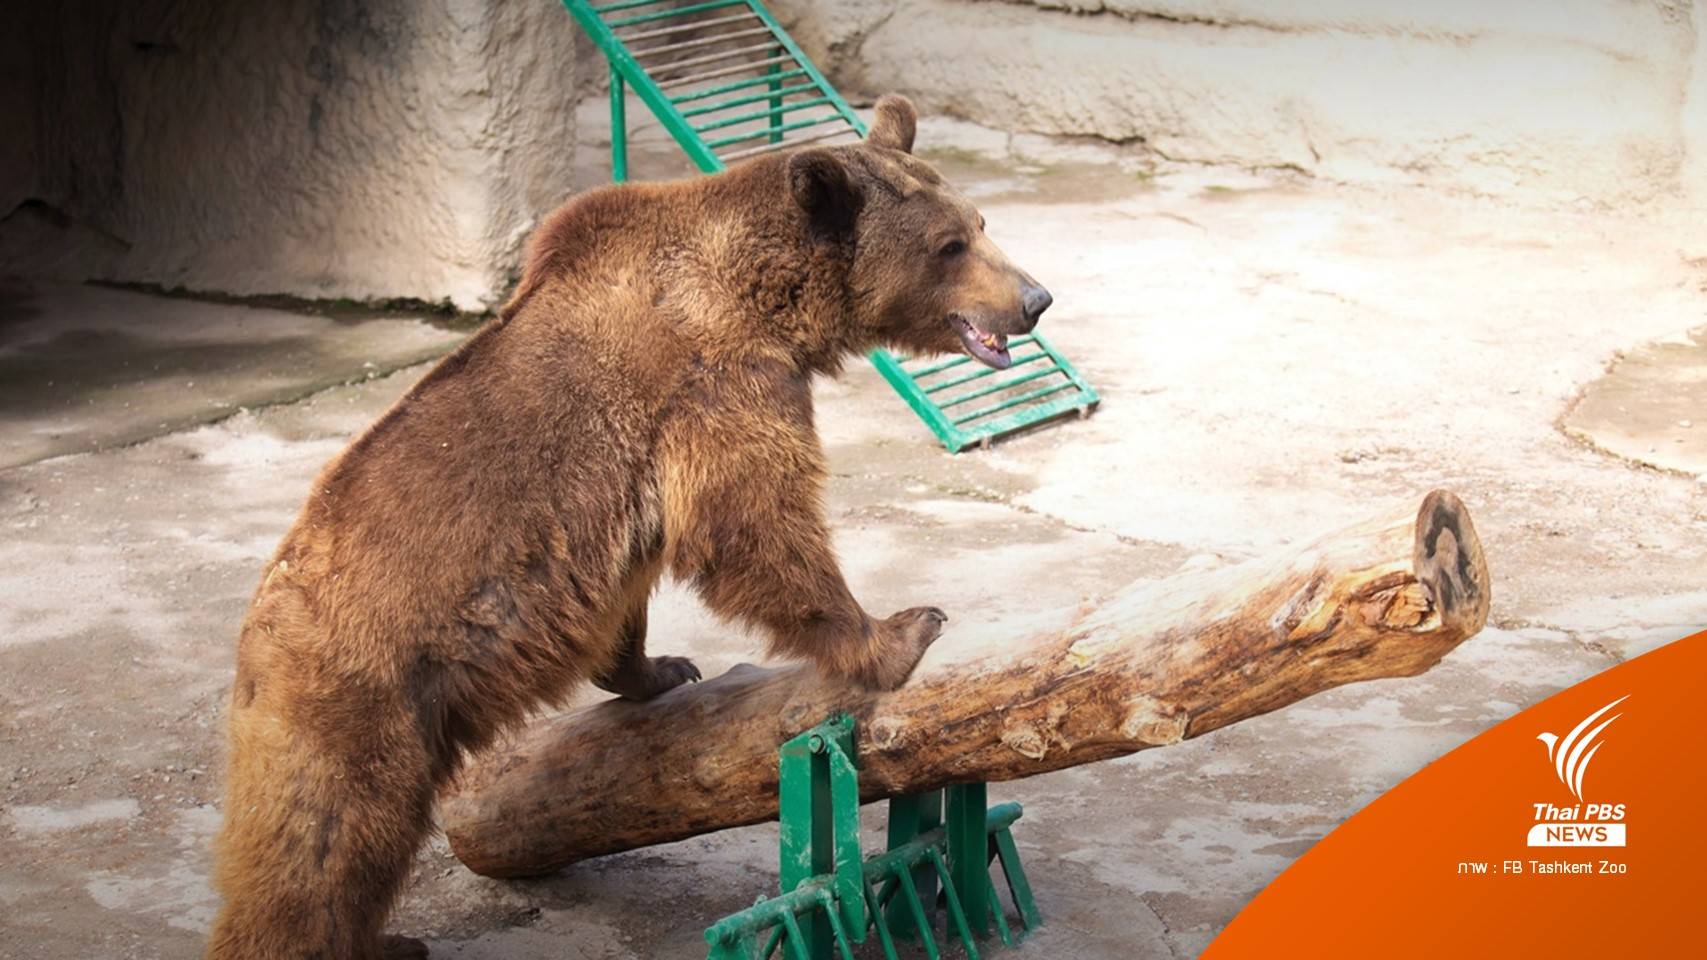 "อุซเบกิสถาน" เปิดสอบหญิงโยนลูก 3 ขวบลงกรงหมีในสวนสัตว์